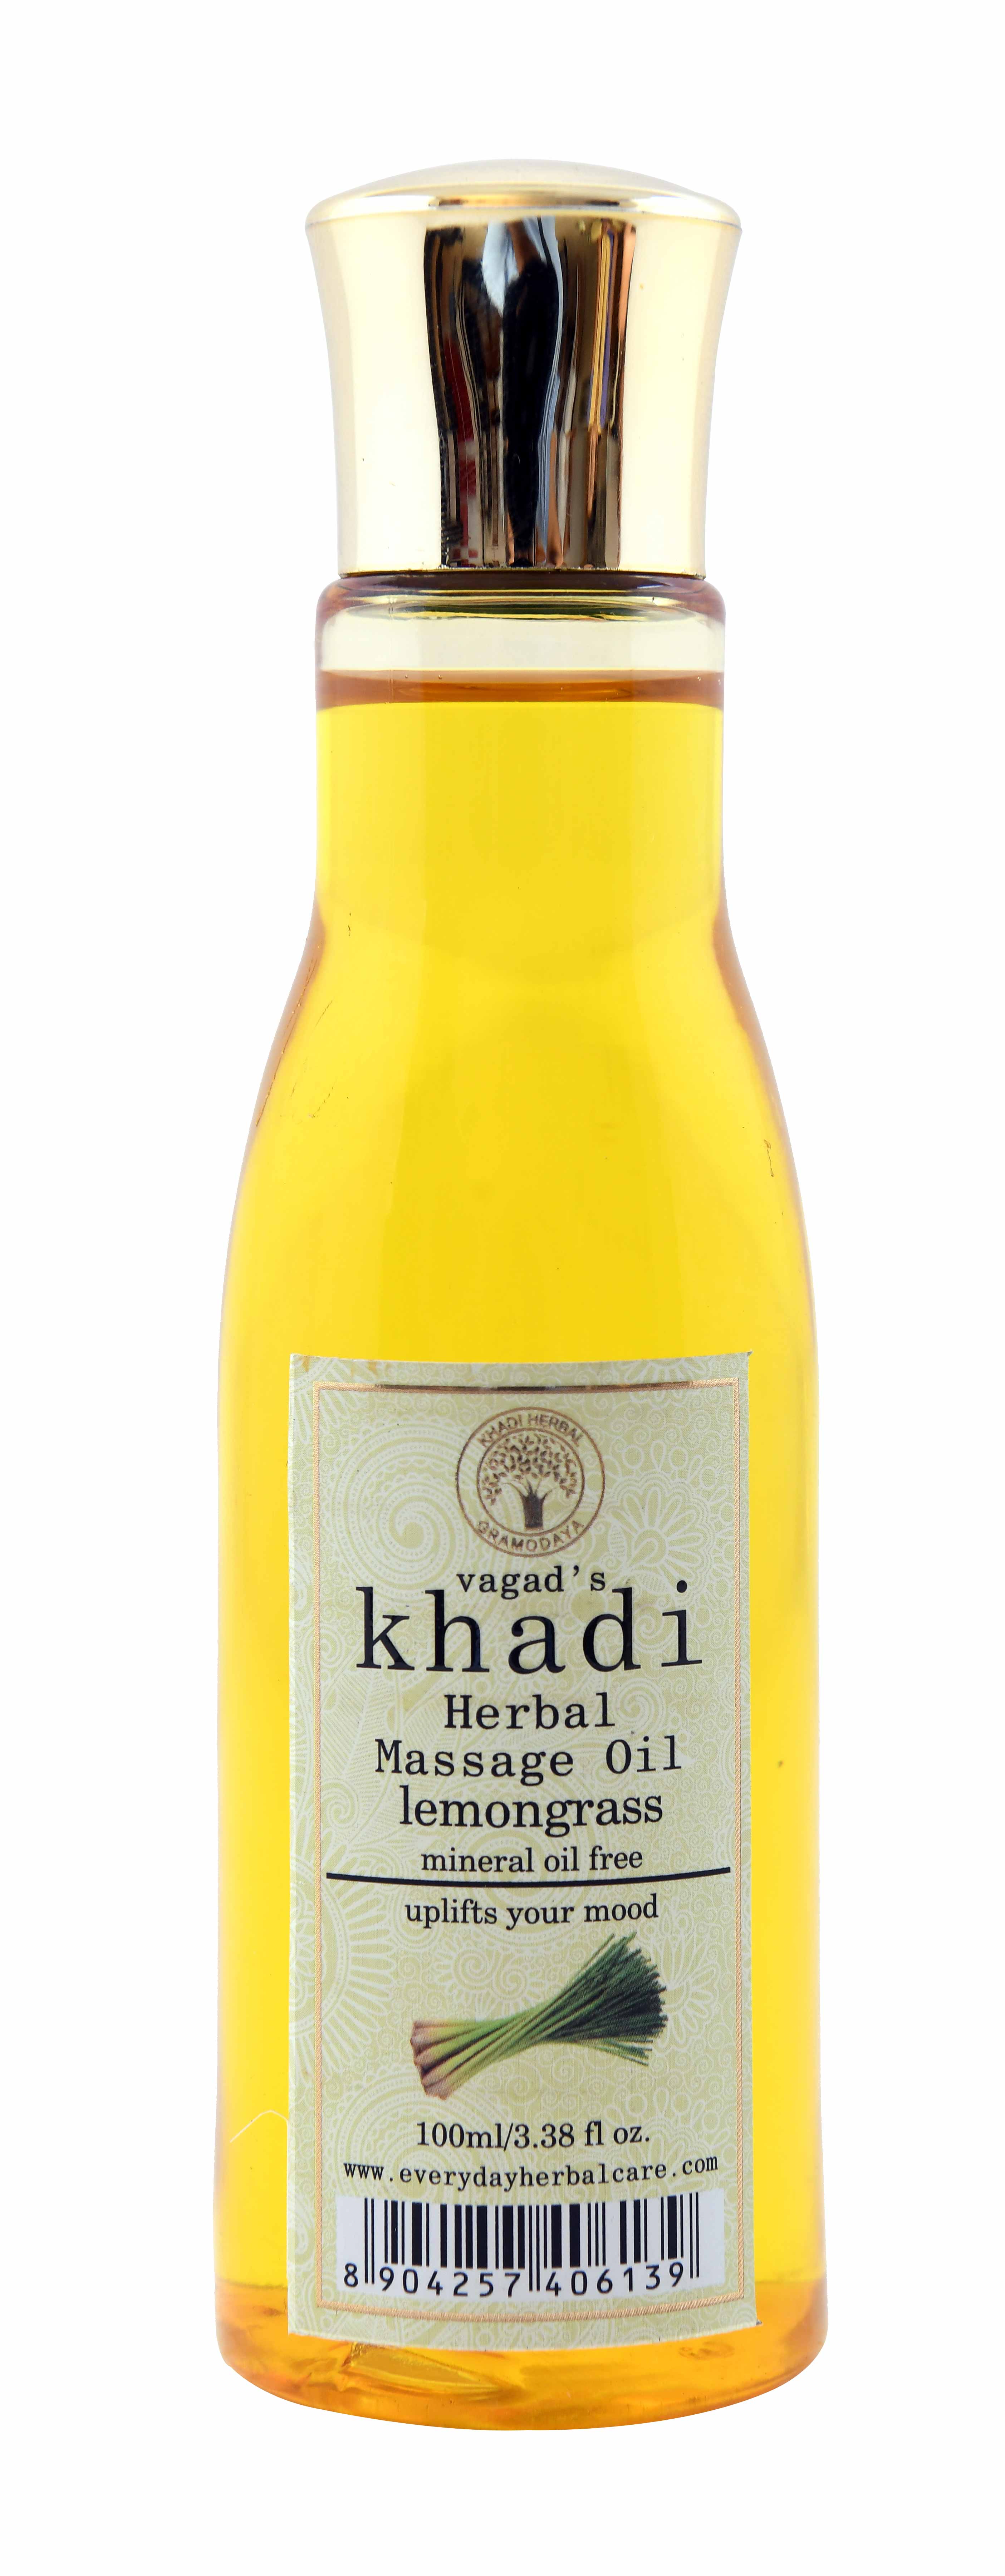 Buy Vagad's Khadi Lemongrass Massage Oil at Best Price Online